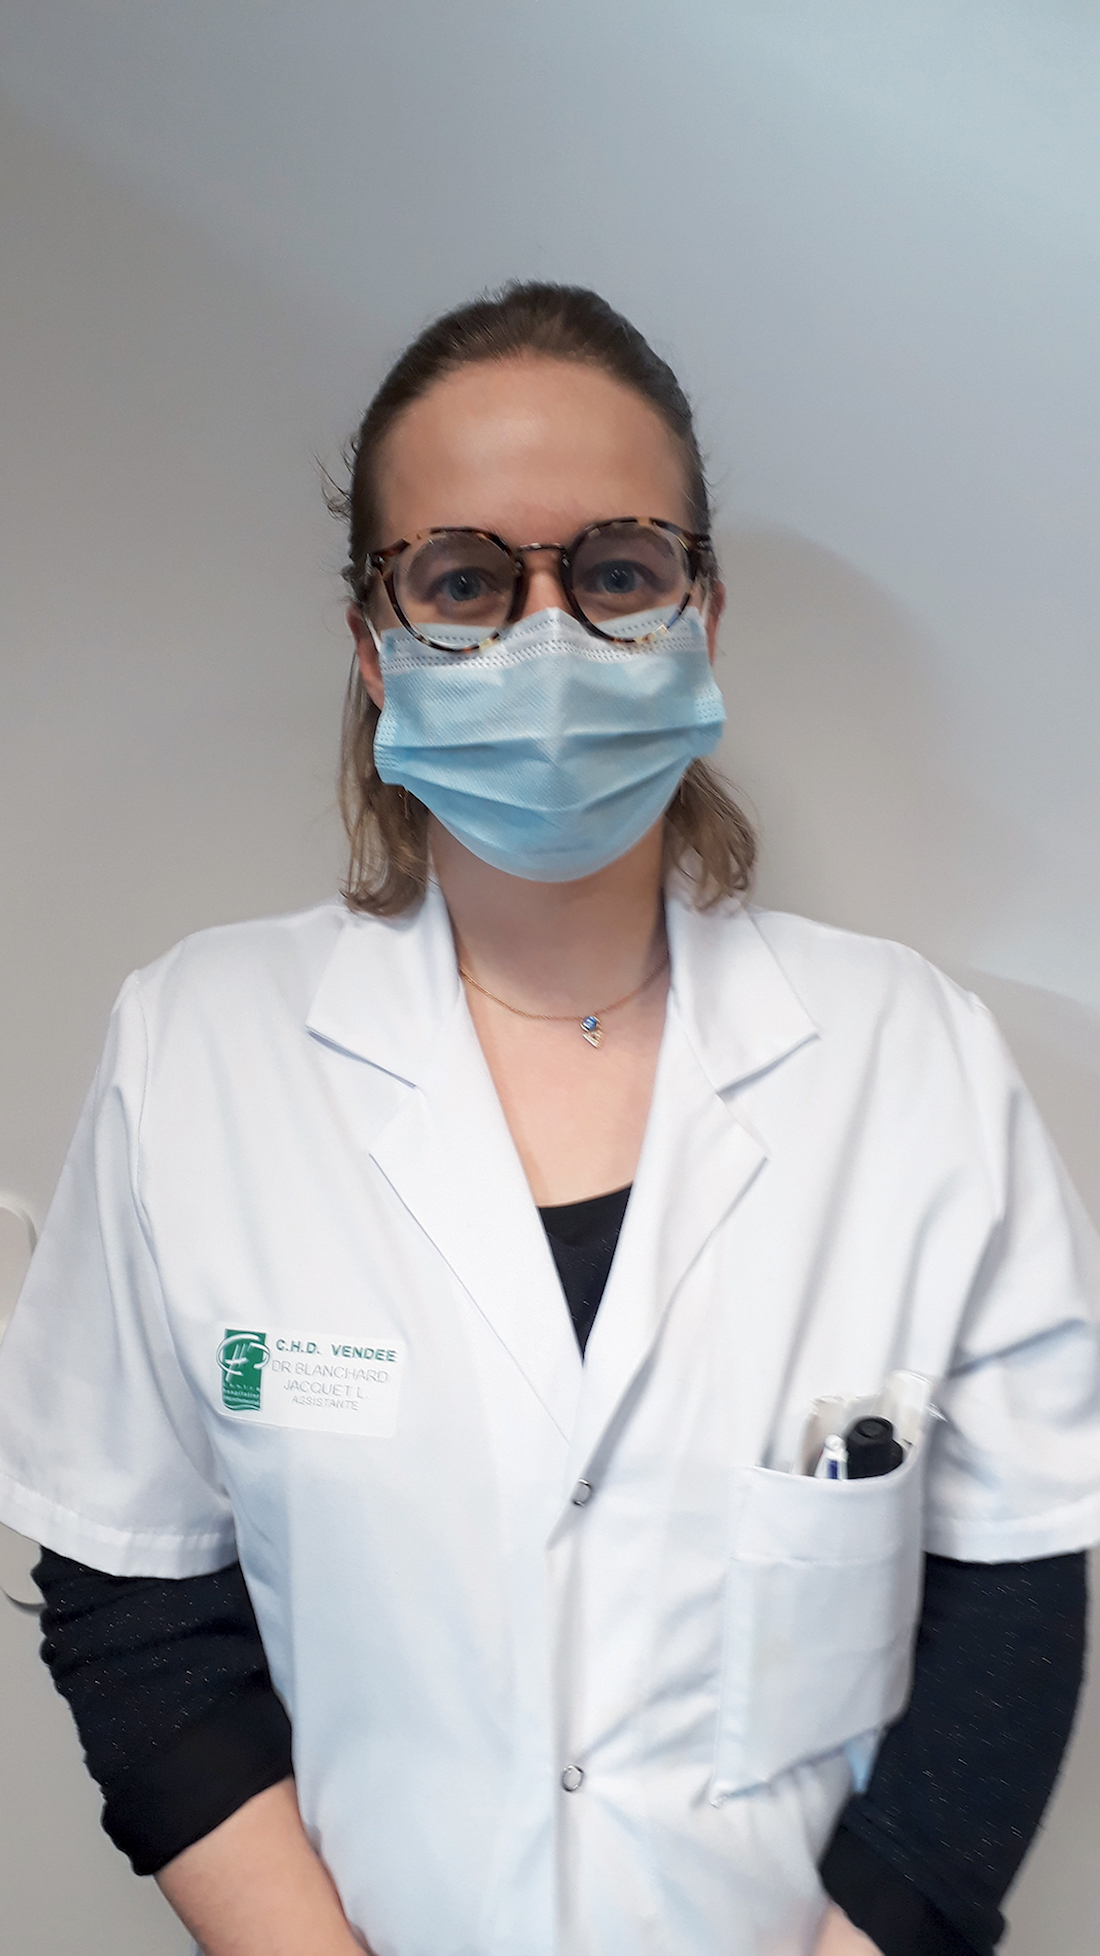 Le Dr. Laure Blanchard-Jacquet, pharmacien assistant spécialiste au CHD Vendée. ©DR